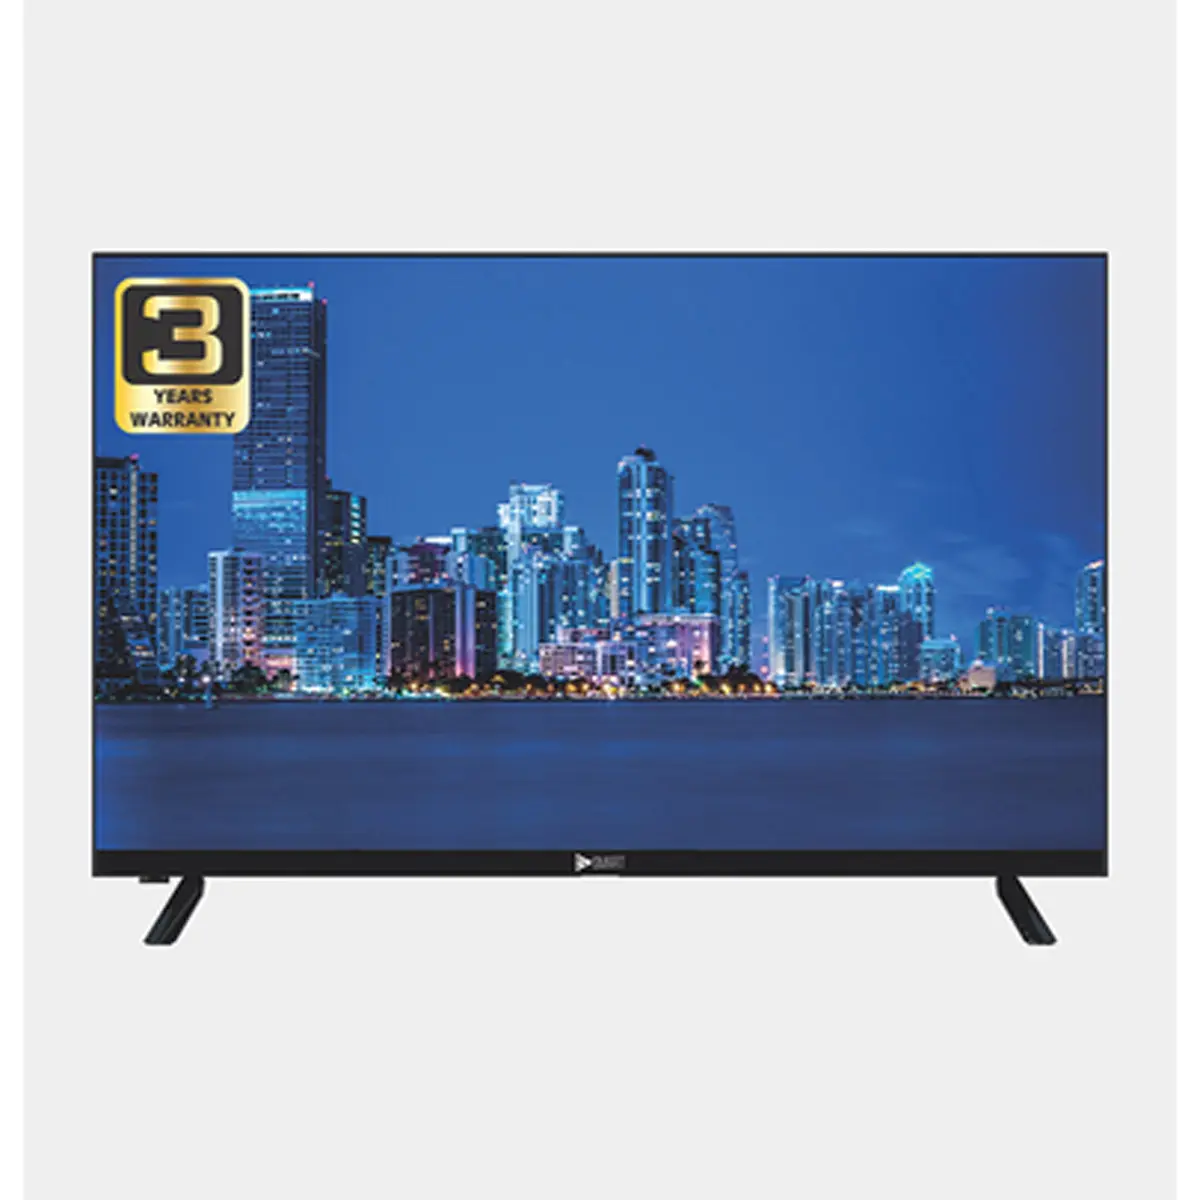 HD Smart TV 32 Zoll DLED Smart Flast Screen Fernseher breite Betrachtung winkel